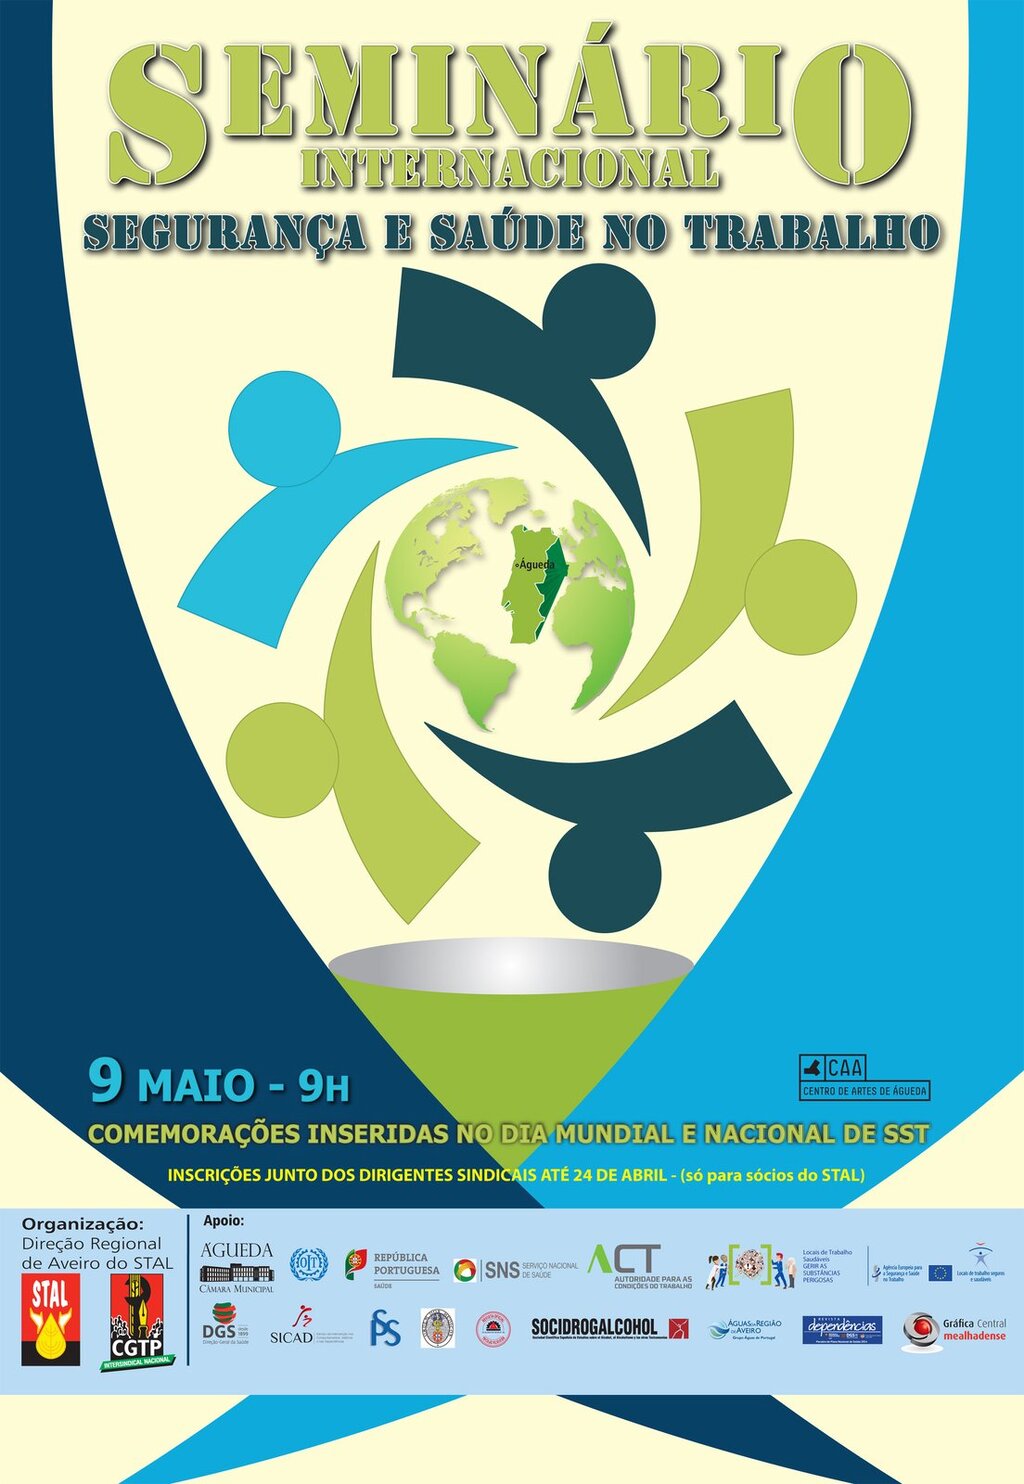 9 de maio: Seminário Internacional "Segurança e Saúde no Trabalho" em Águeda